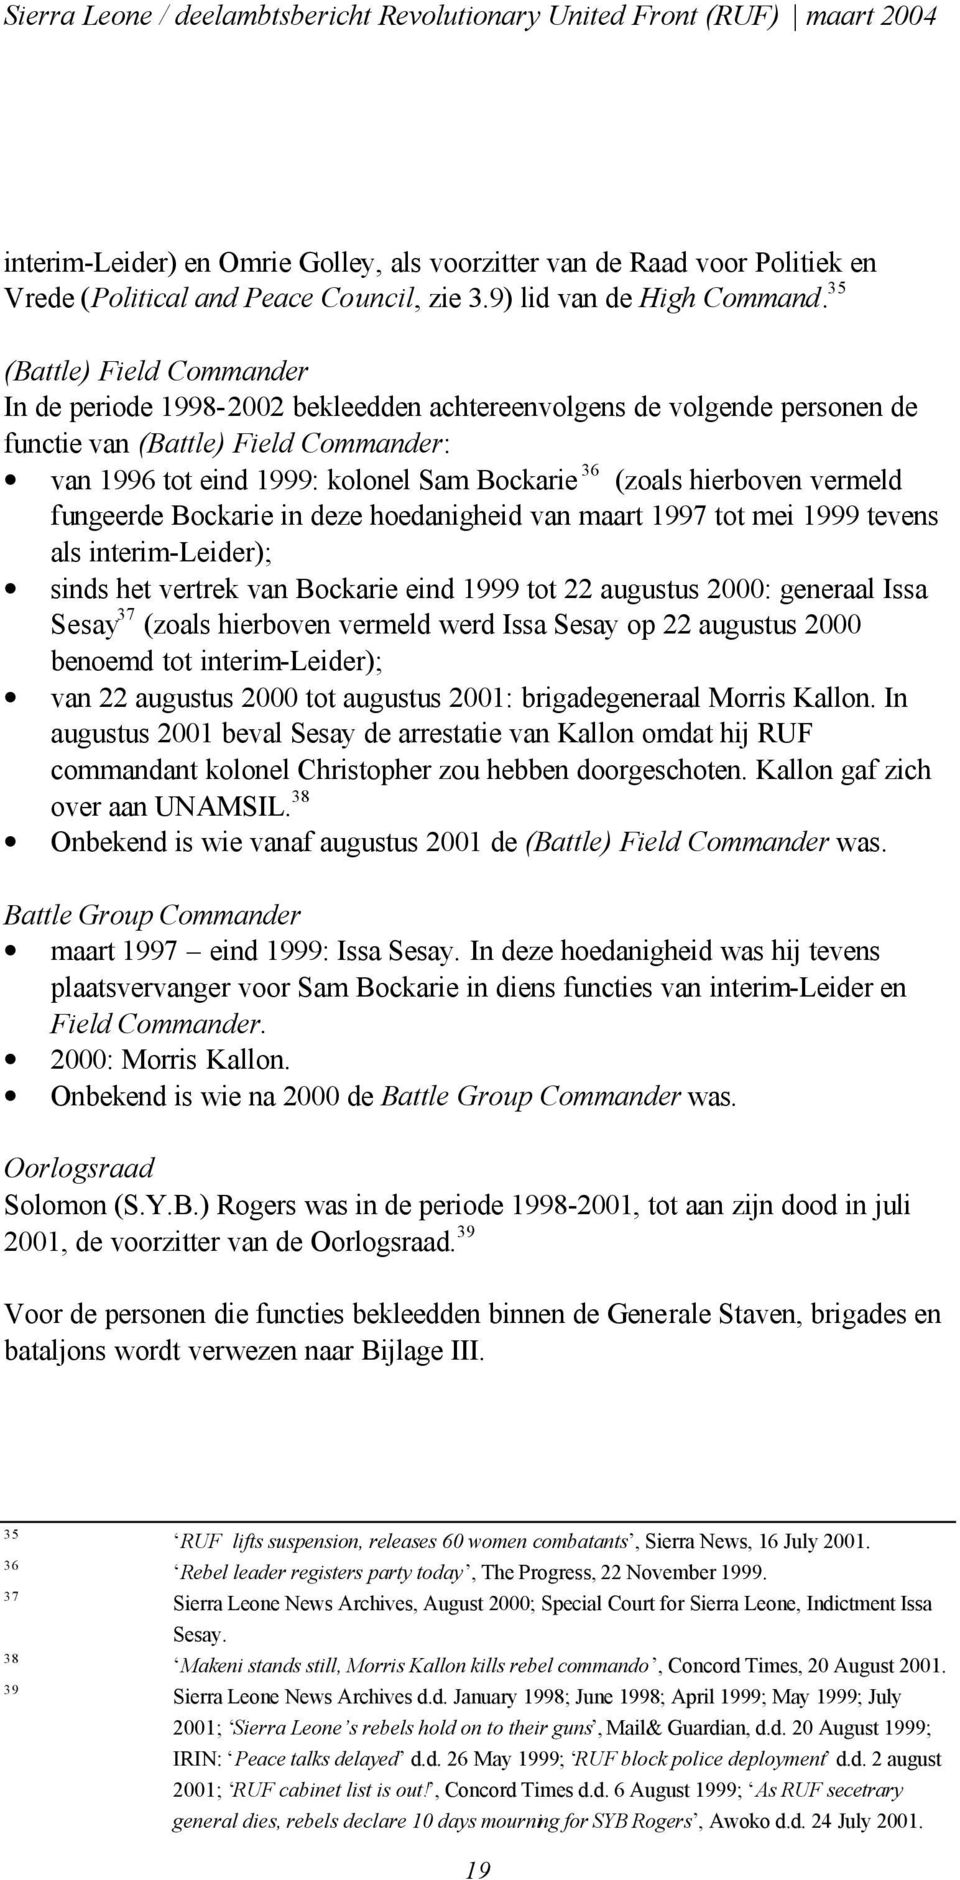 hierboven vermeld fungeerde Bockarie in deze hoedanigheid van maart 1997 tot mei 1999 tevens als interim-leider); sinds het vertrek van Bockarie eind 1999 tot 22 augustus 2000: generaal Issa Sesay 37